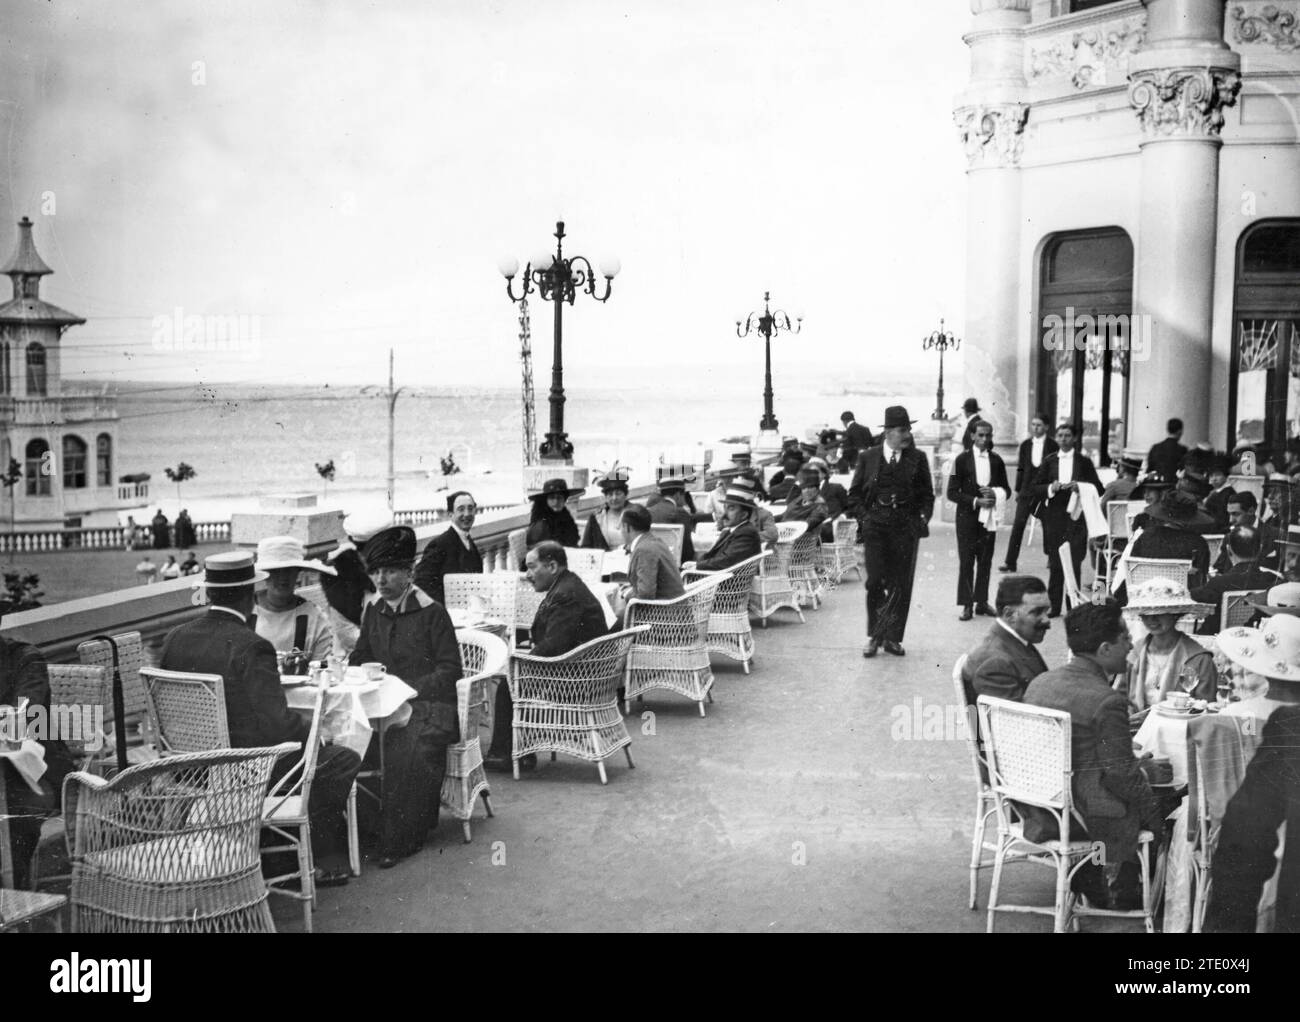 Santander. August 1917. Terrasse des Gran Casino del Sardinero. Quelle: Album/Archivo ABC Stockfoto